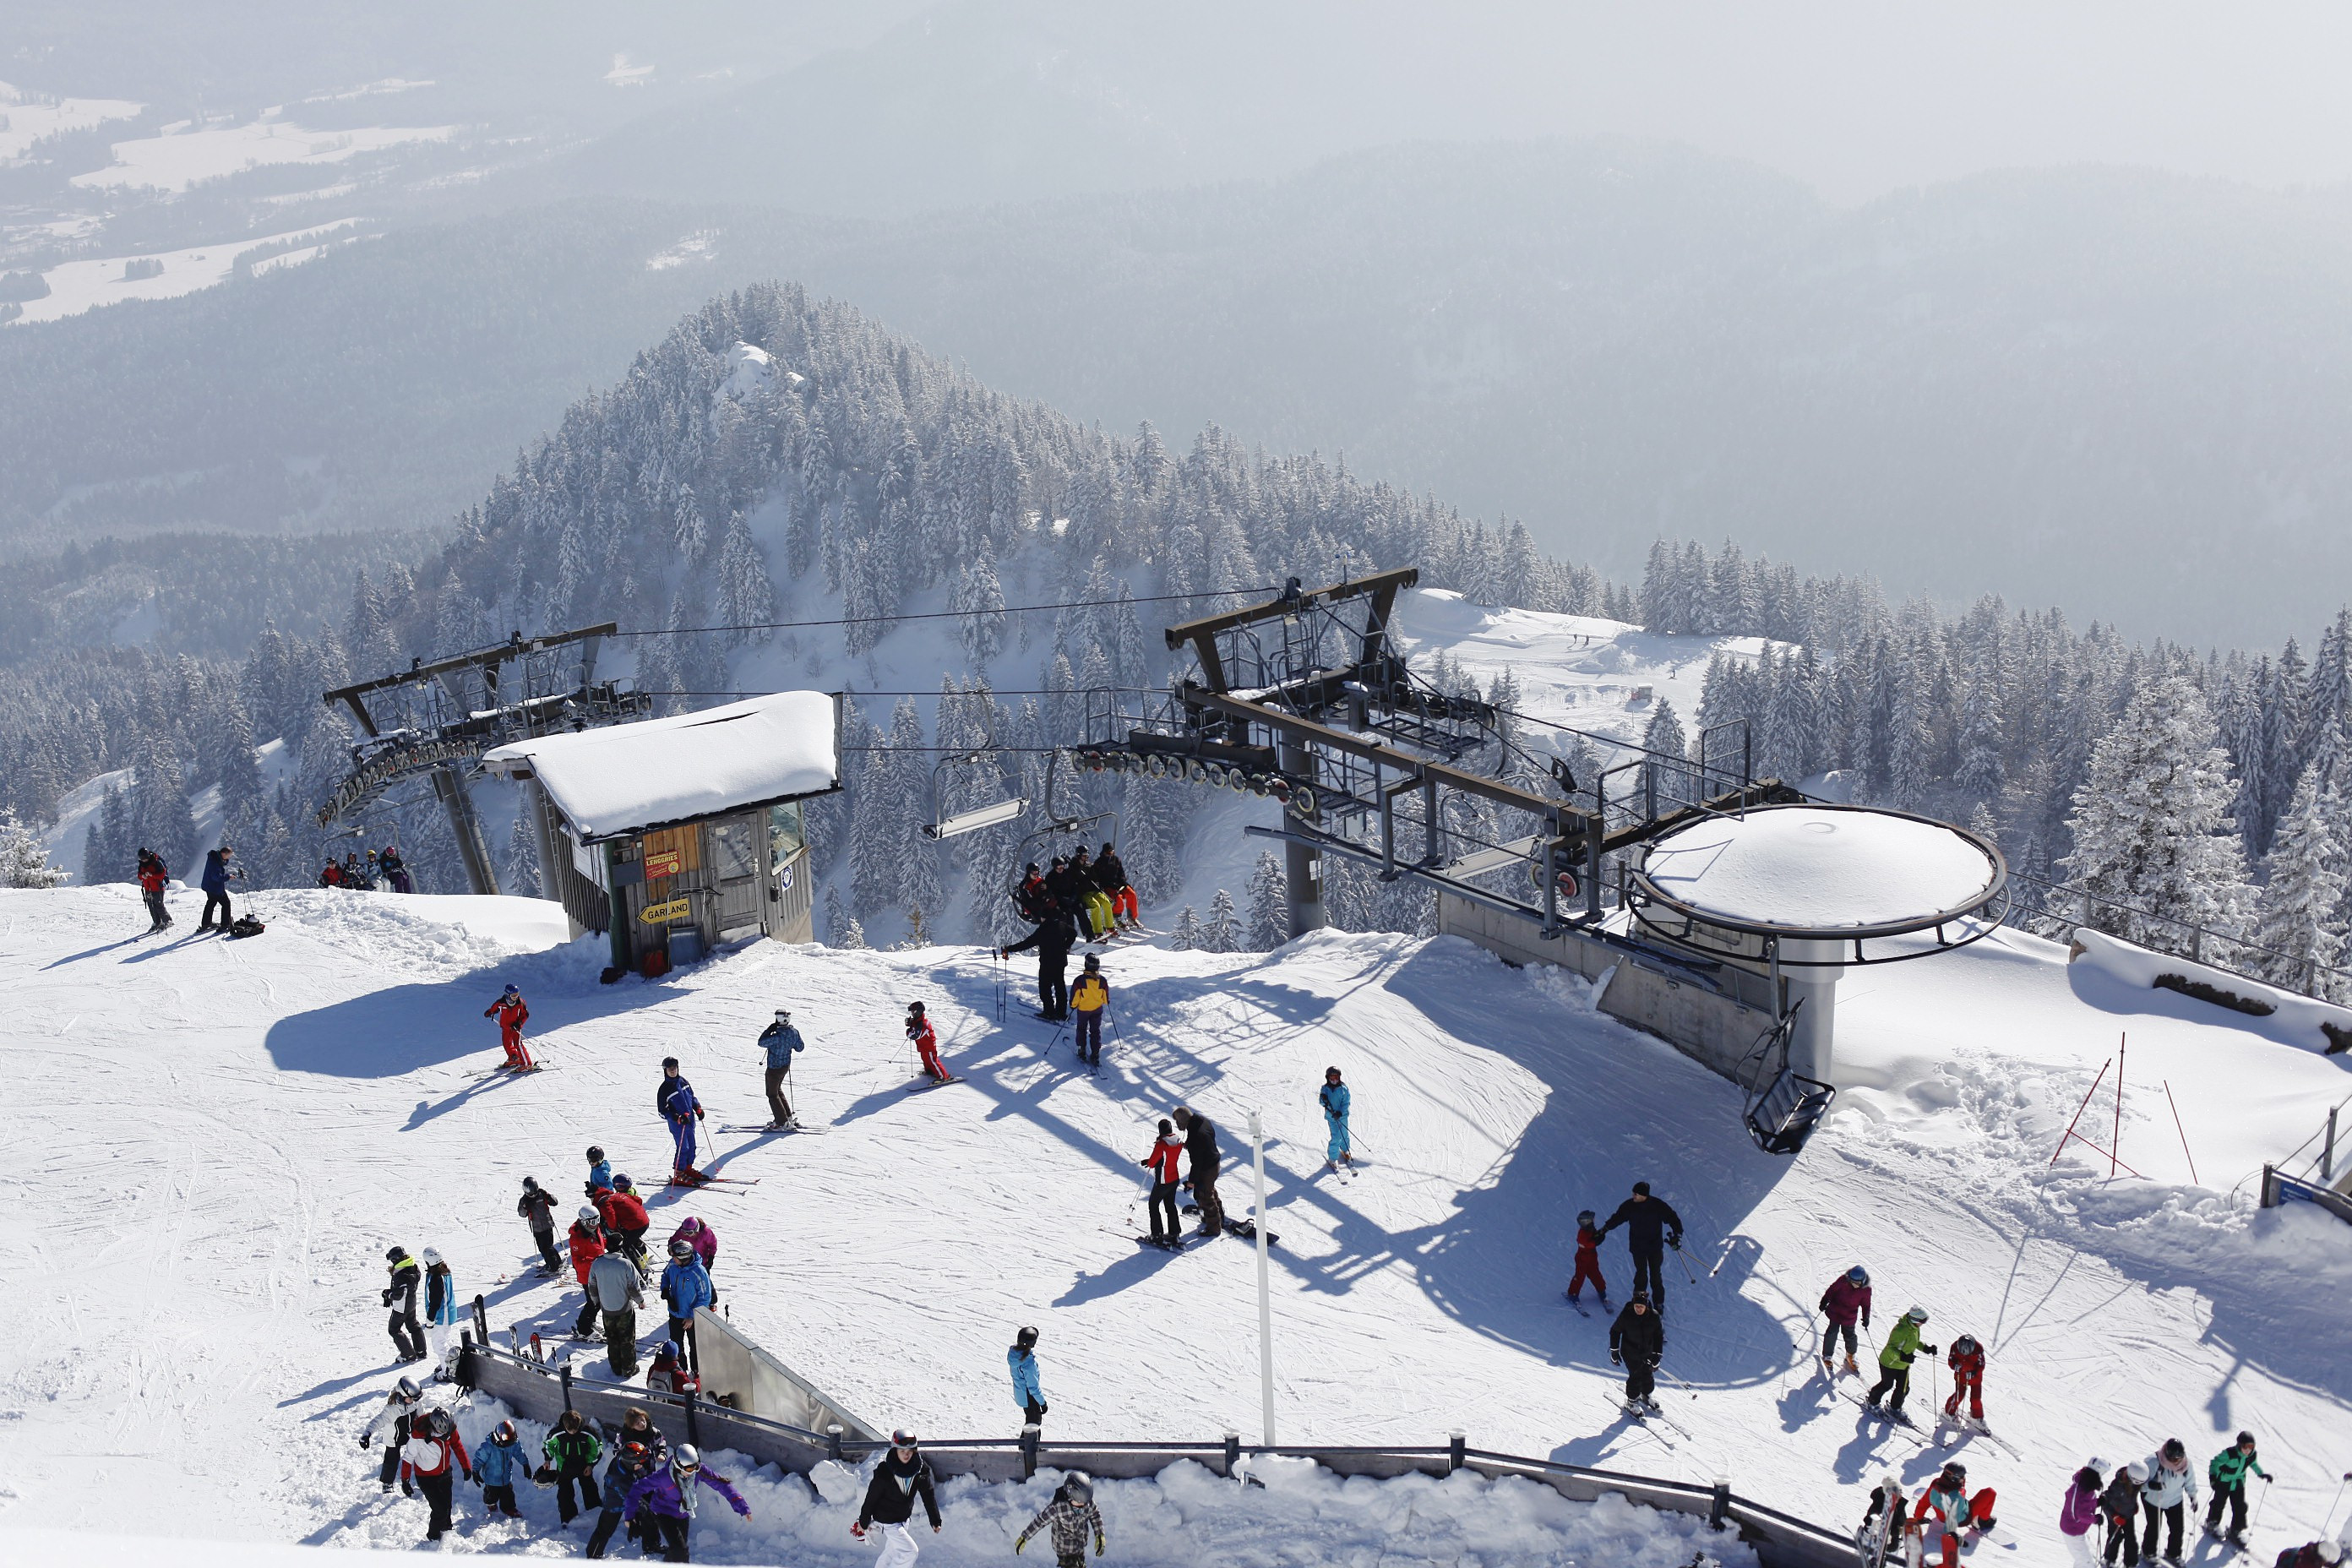 Brauneck • Ski Holiday • Reviews • Skiing